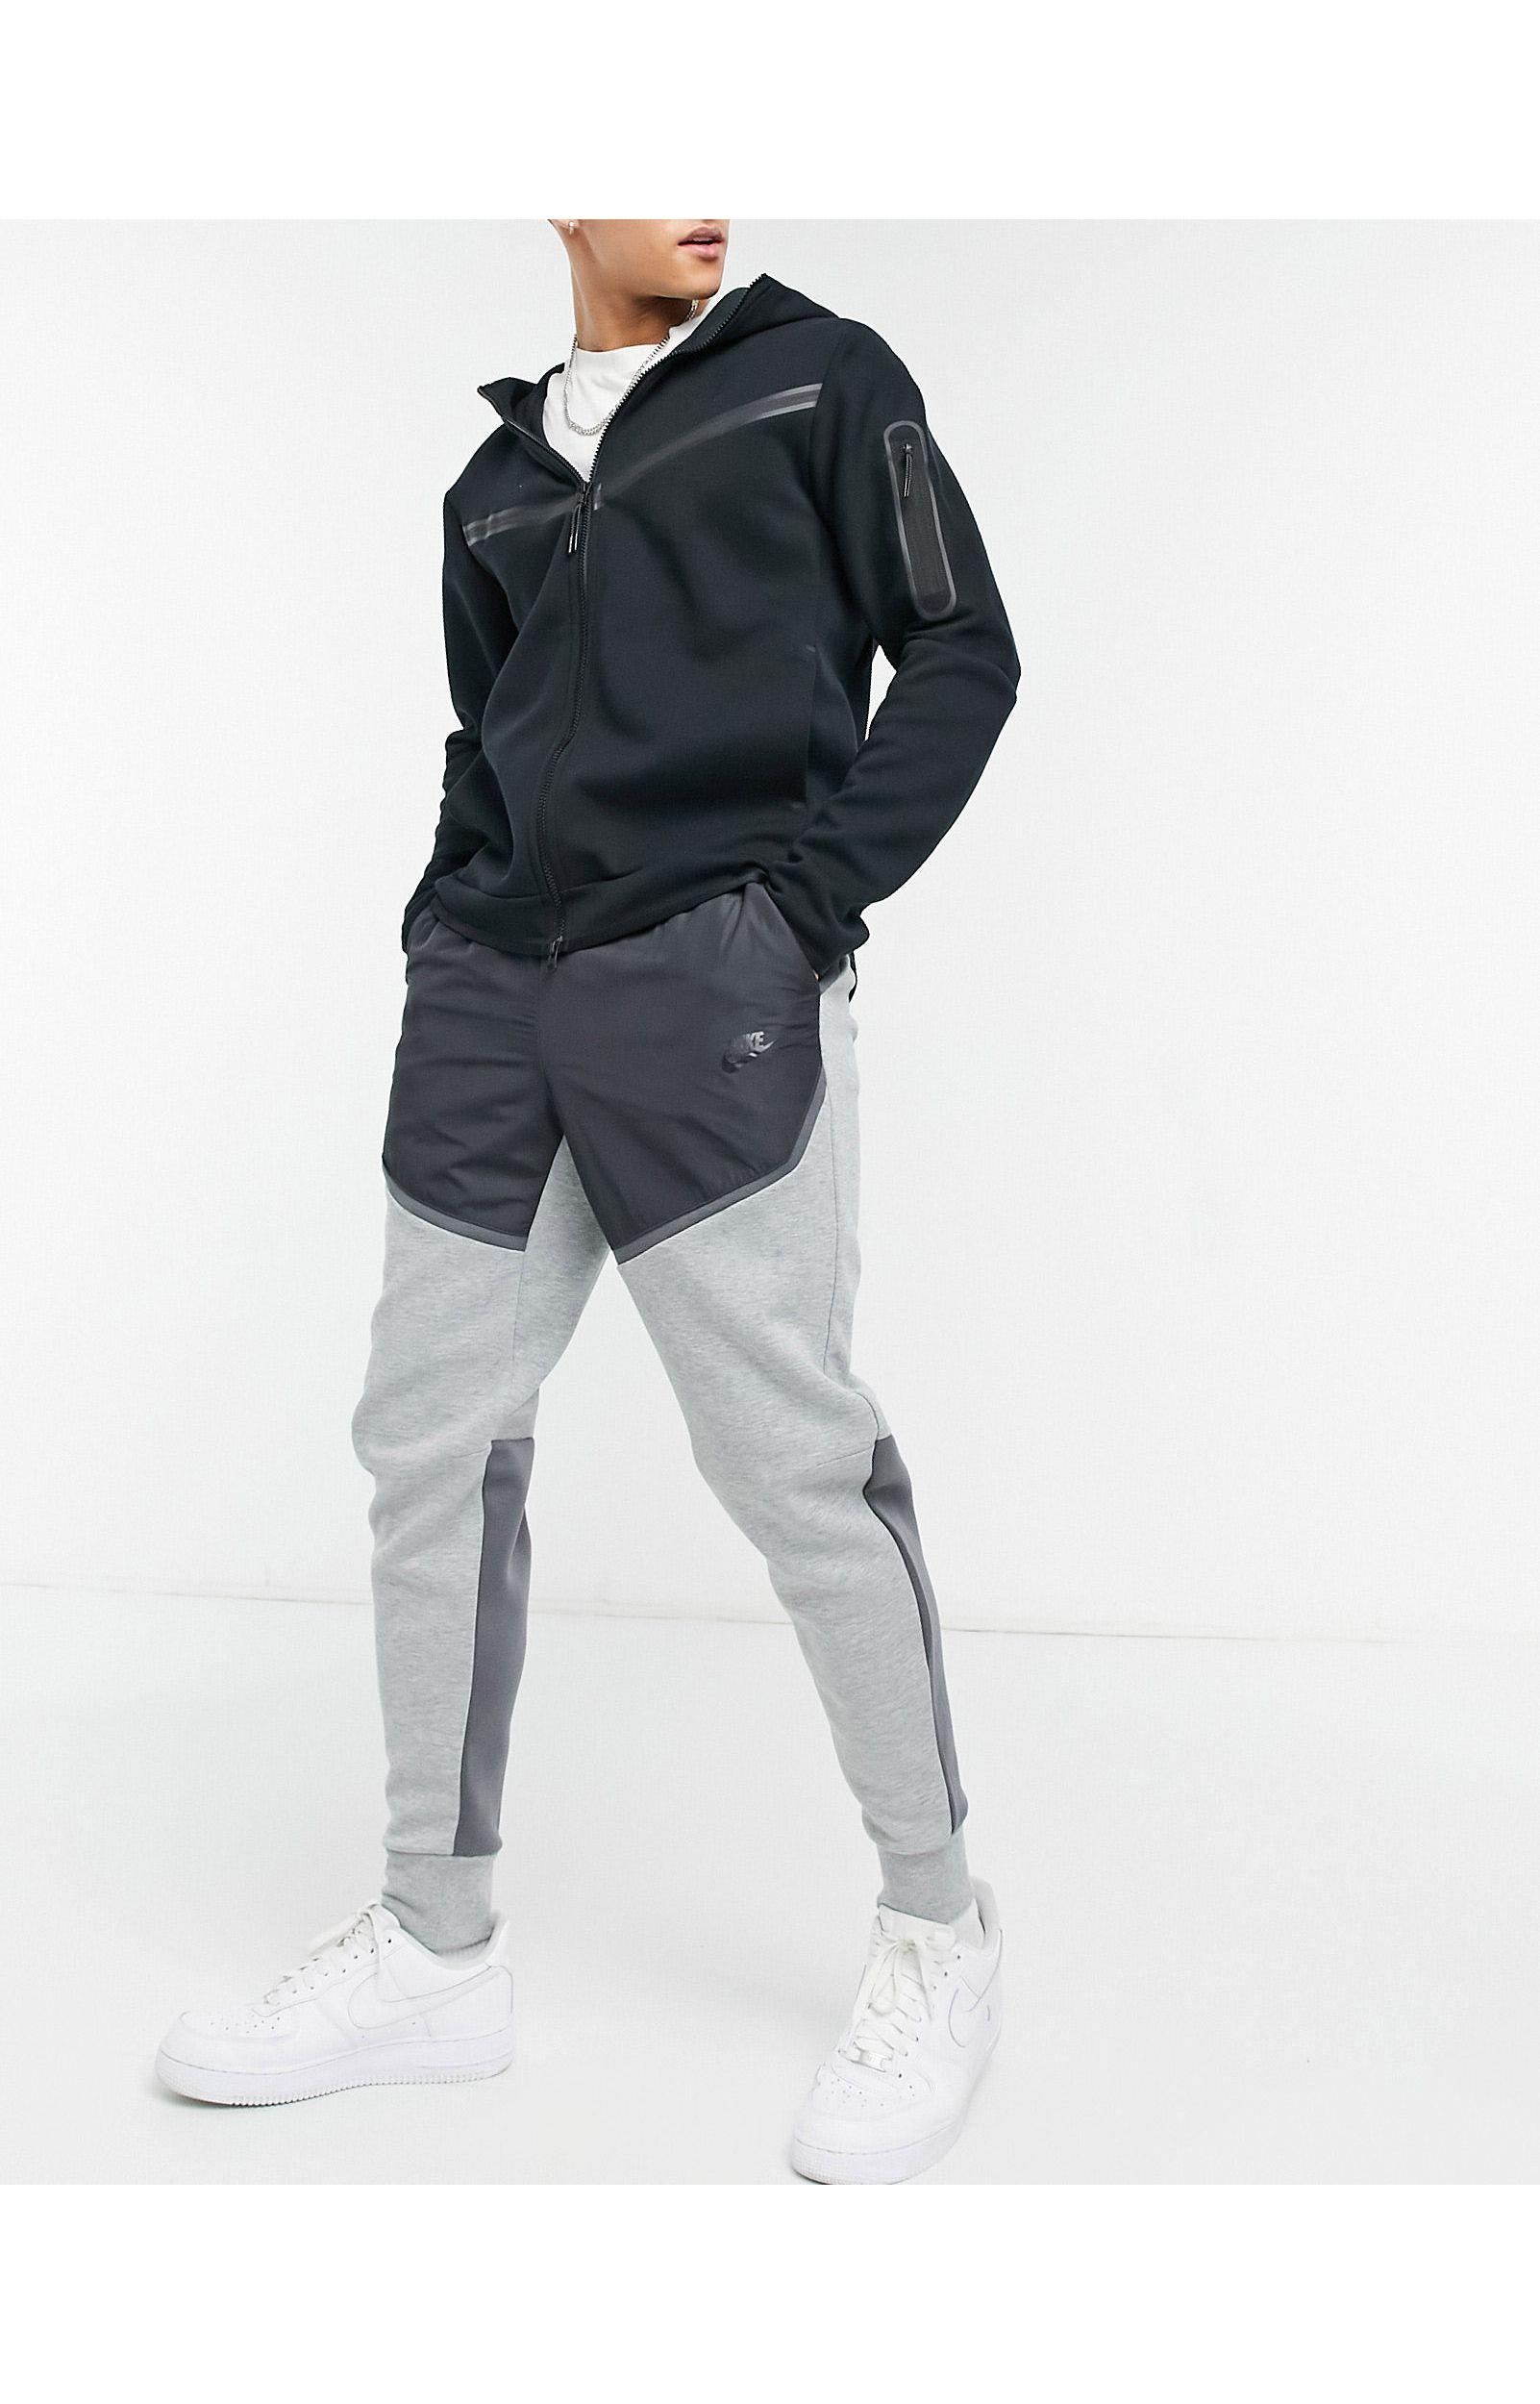 Nike Tech Fleece Colourblock joggers in Grey (Gray) for Men - Lyst